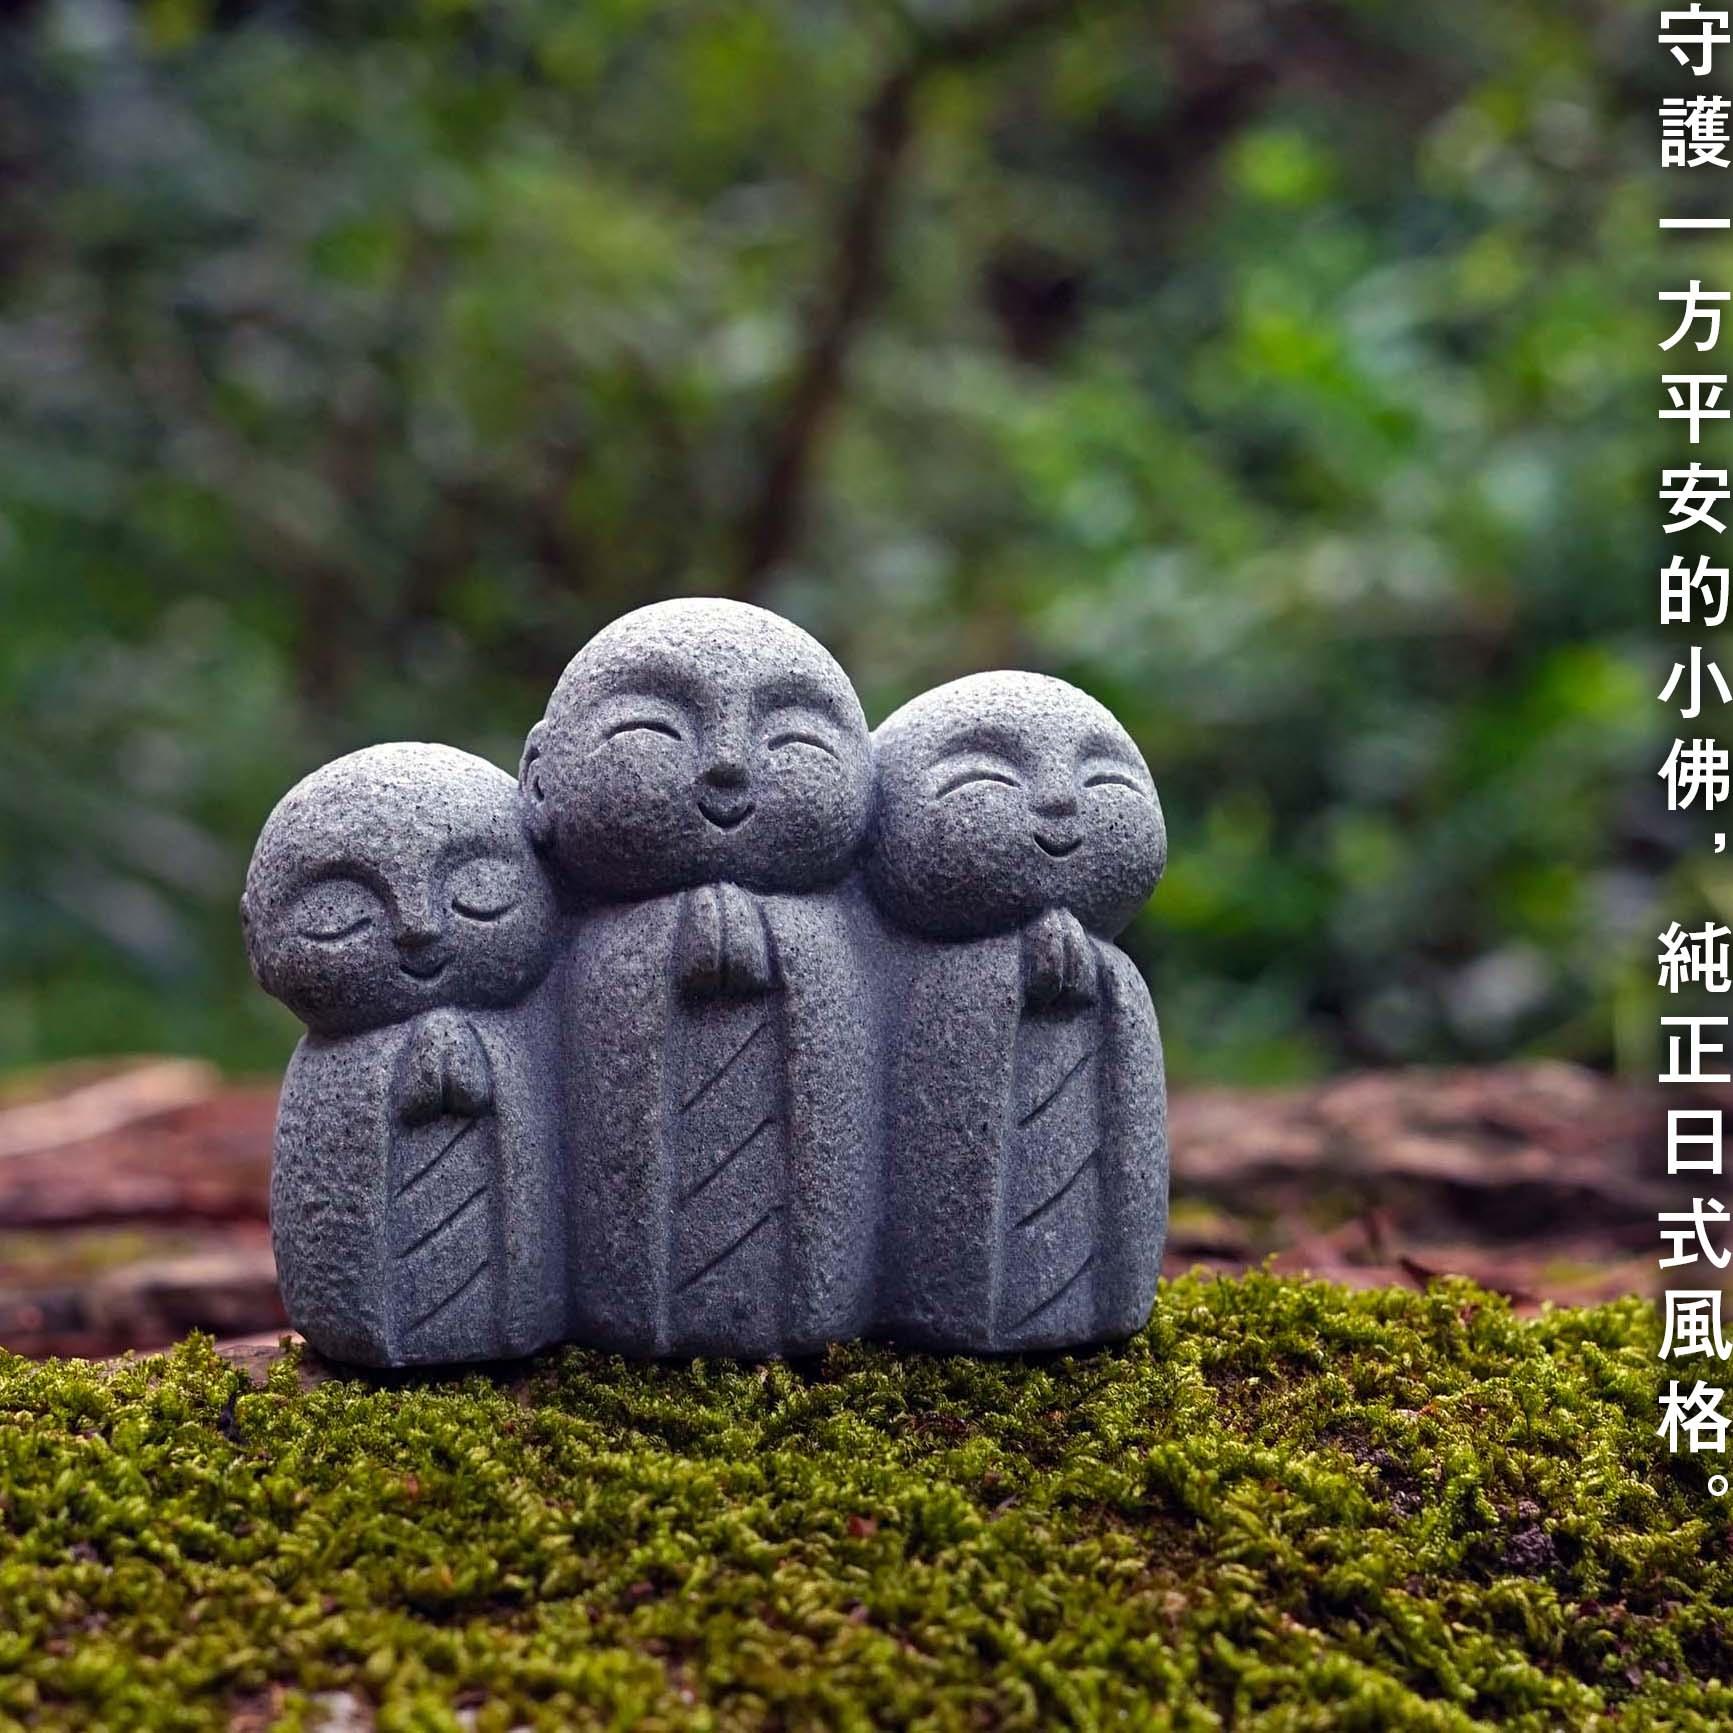 可爱日式小和尚京都地藏造型鱼缸水族盆景搭配摆件家居香薰装饰